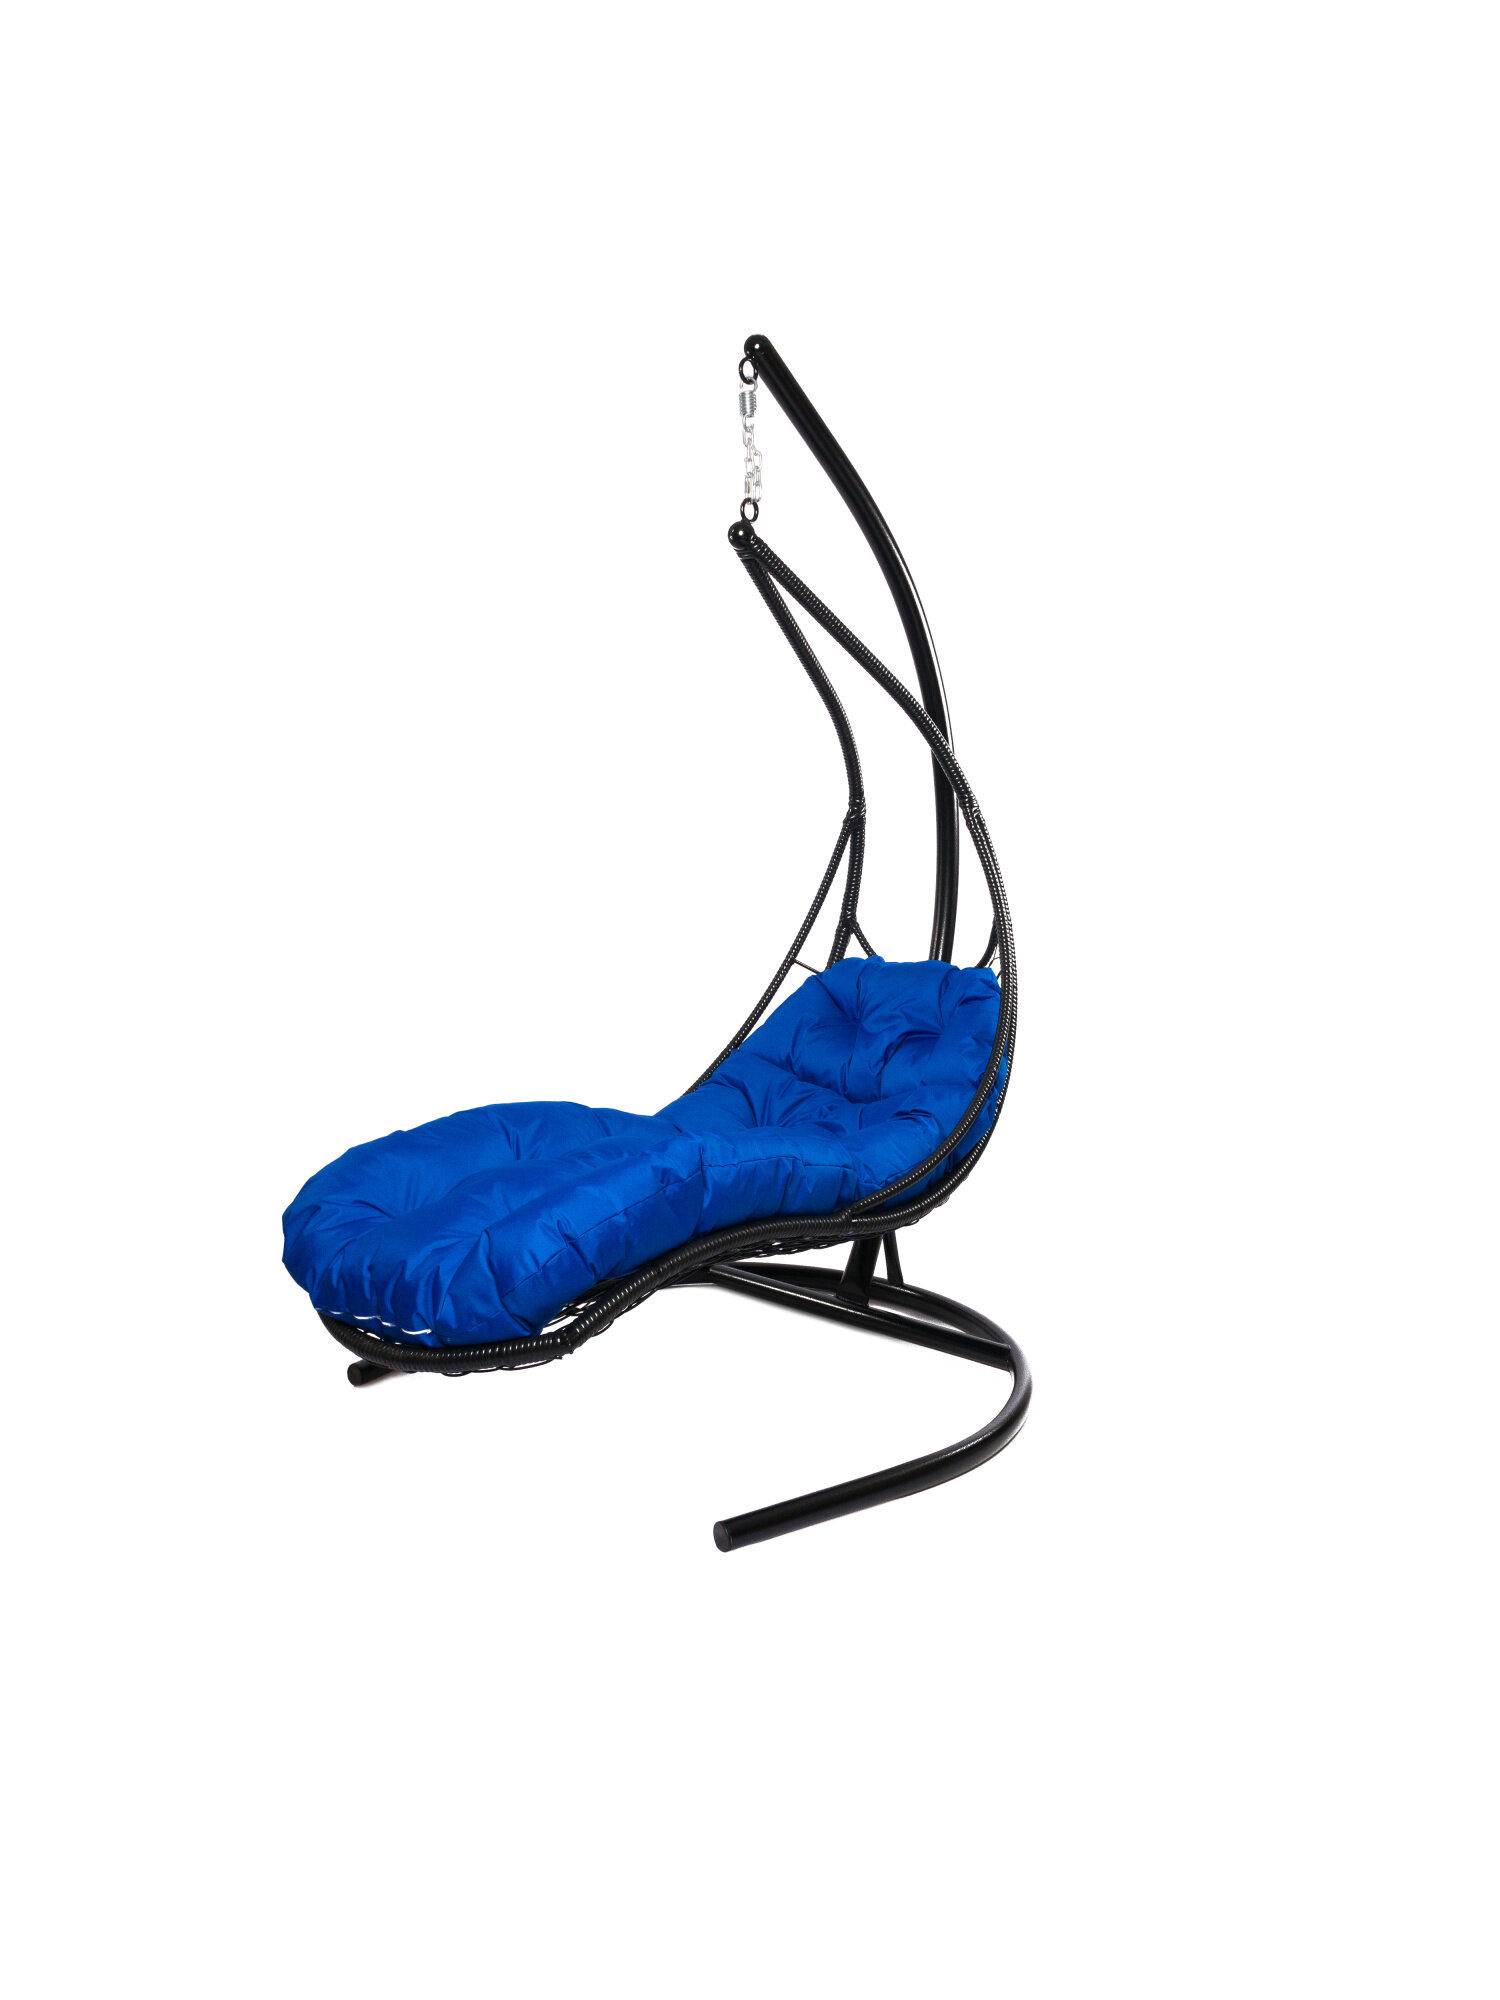 Подвесное кресло M-group лежачее с ротангом черное синяя подушка